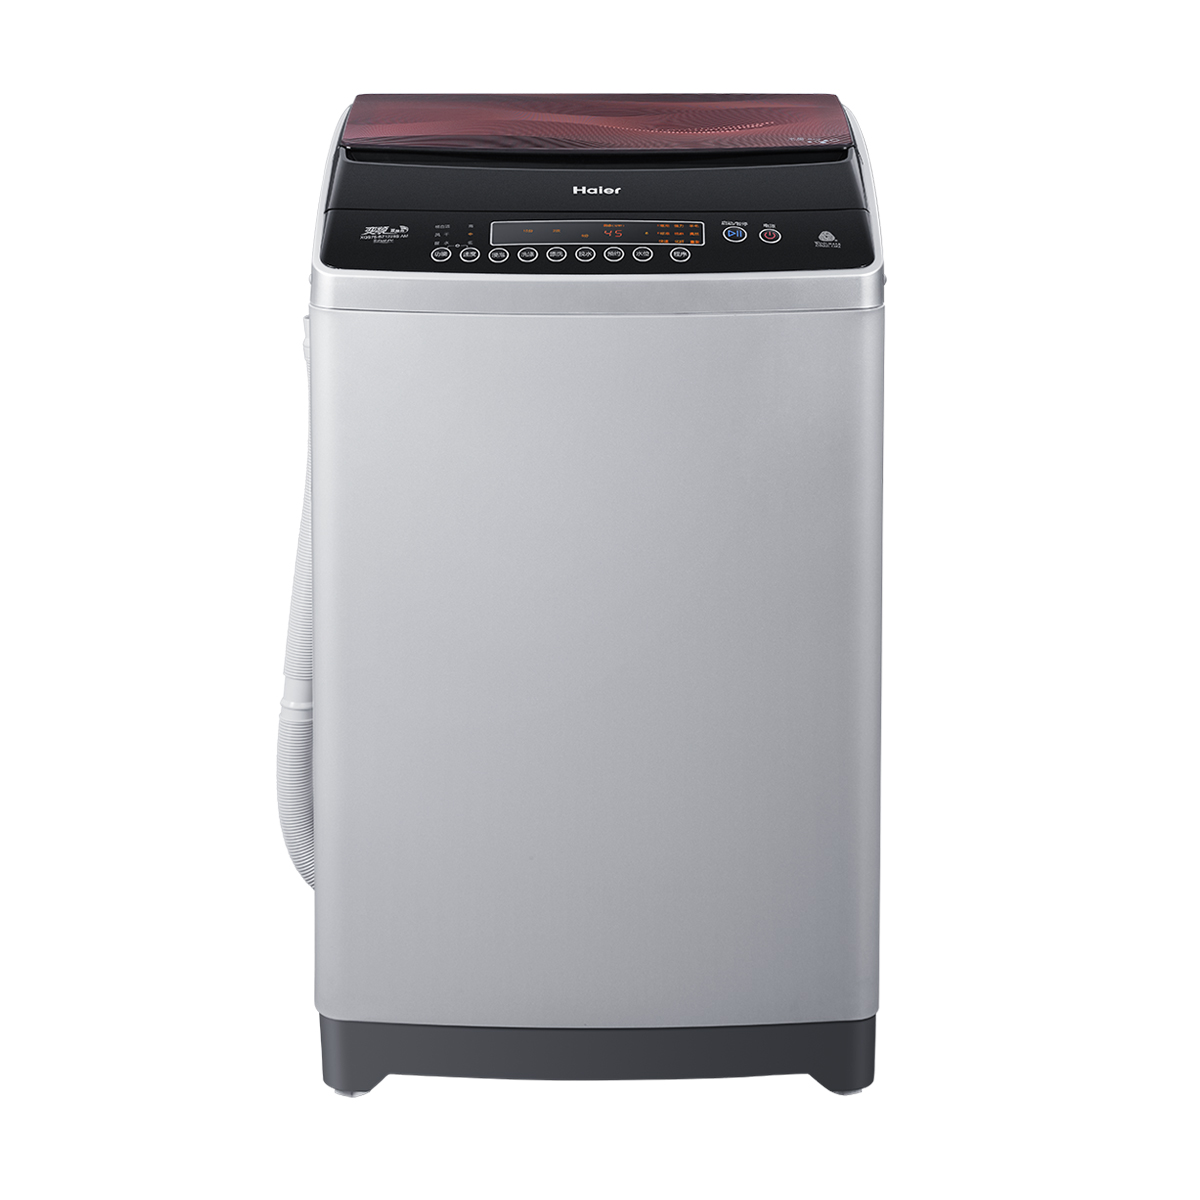 海尔Haier洗衣机 XQS75-BZ1228S(AM) 说明书